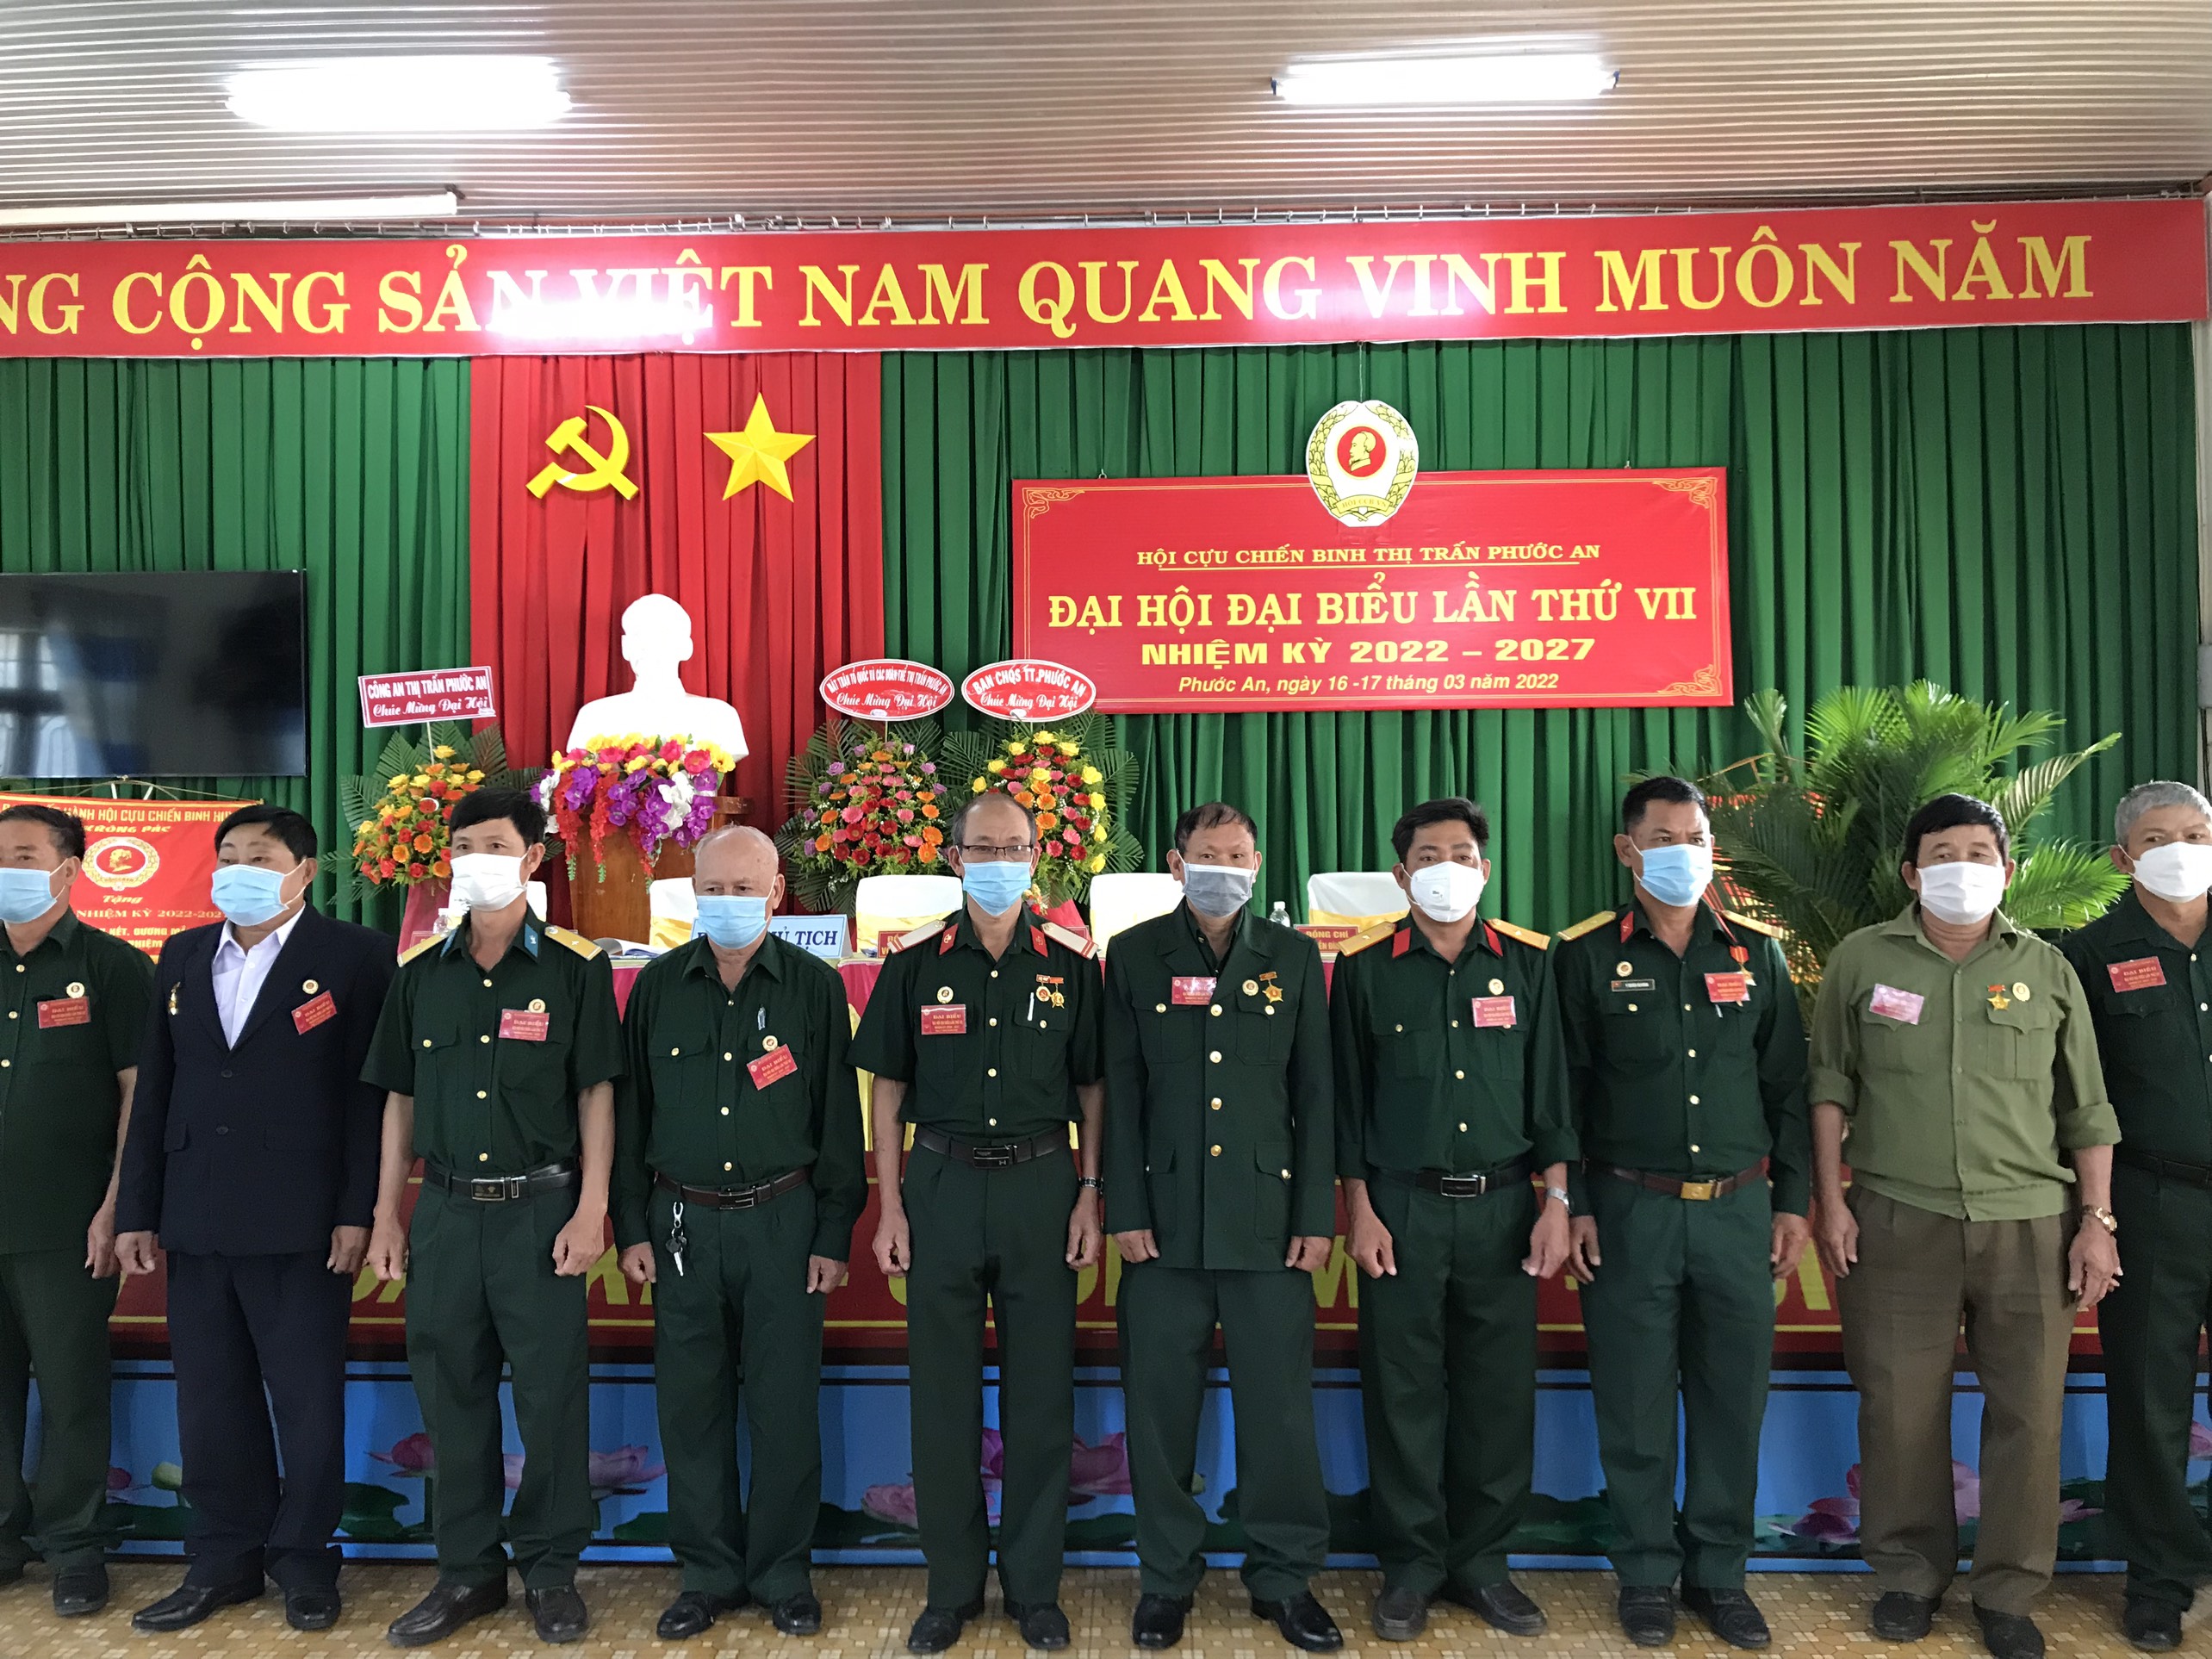 Đại hội Đại biểu Hội Cựu Chiến binh thị trấn Phước An lần thứ VII, nhiệm kỳ 2022 - 2027